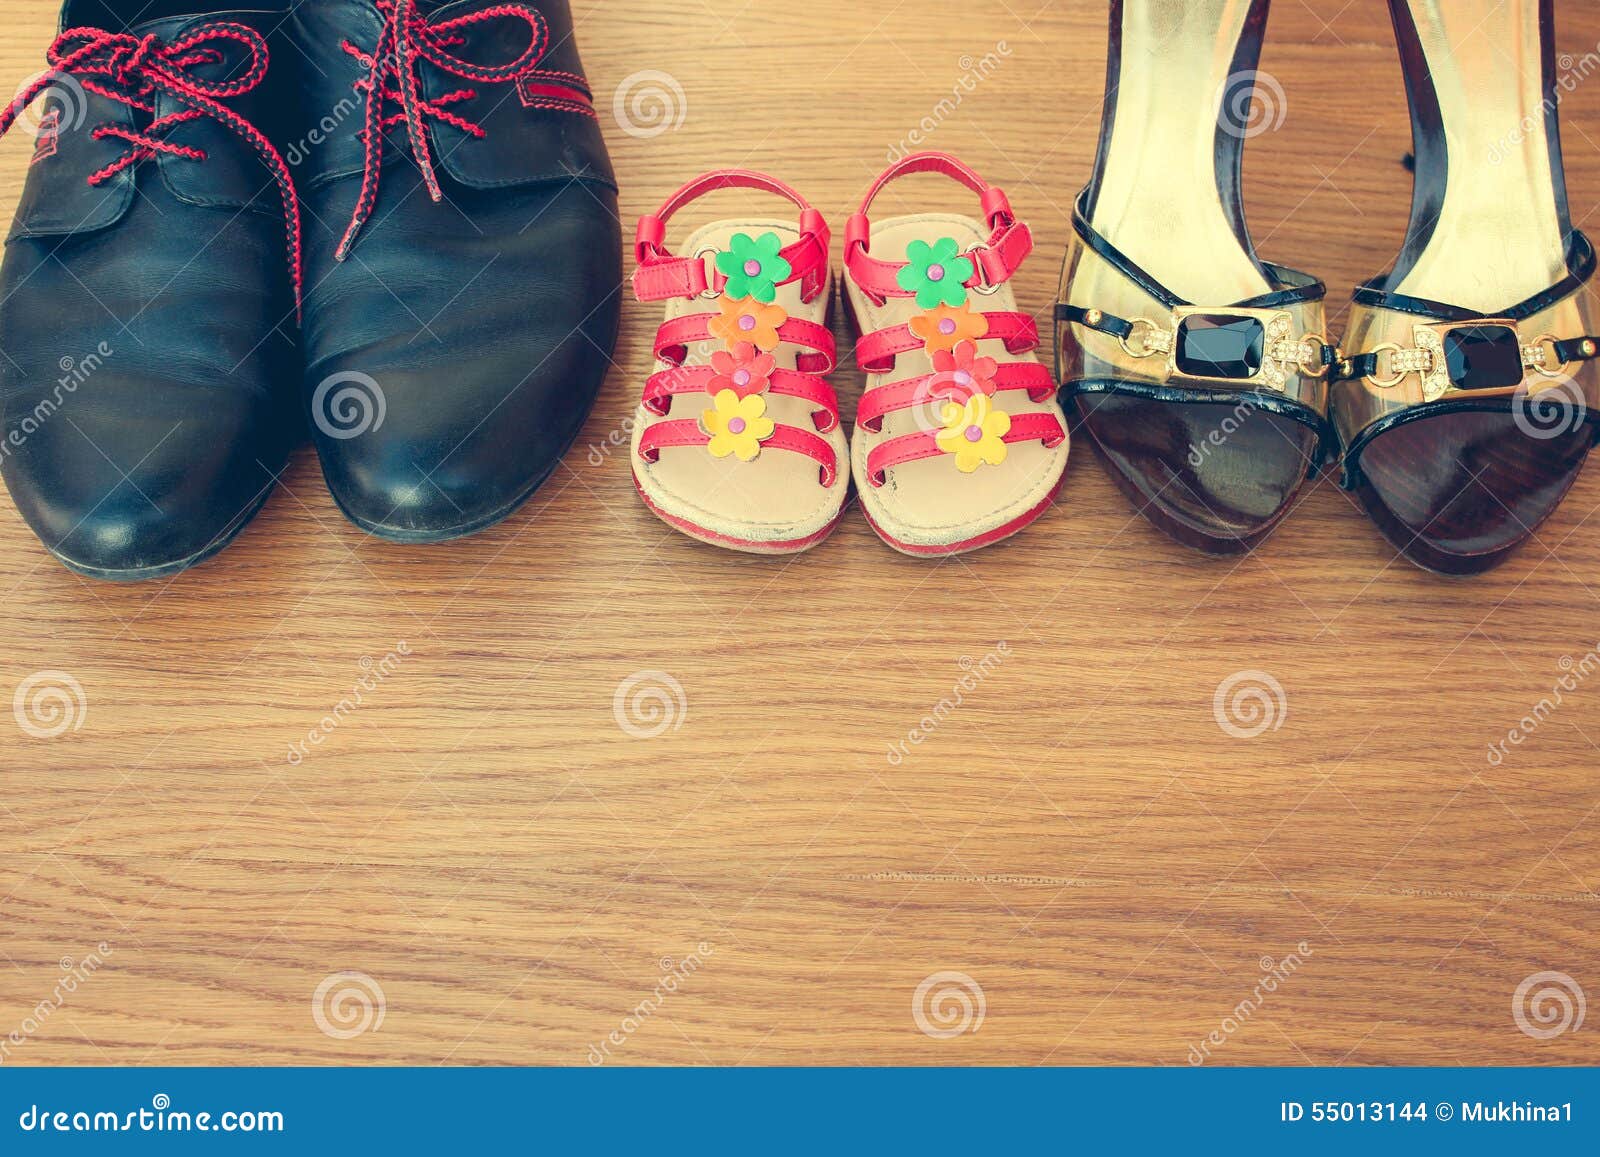 Tres Pares De Zapatos: Hombres, Mujeres Y Niños de archivo - Imagen de casa, pares: 55013144